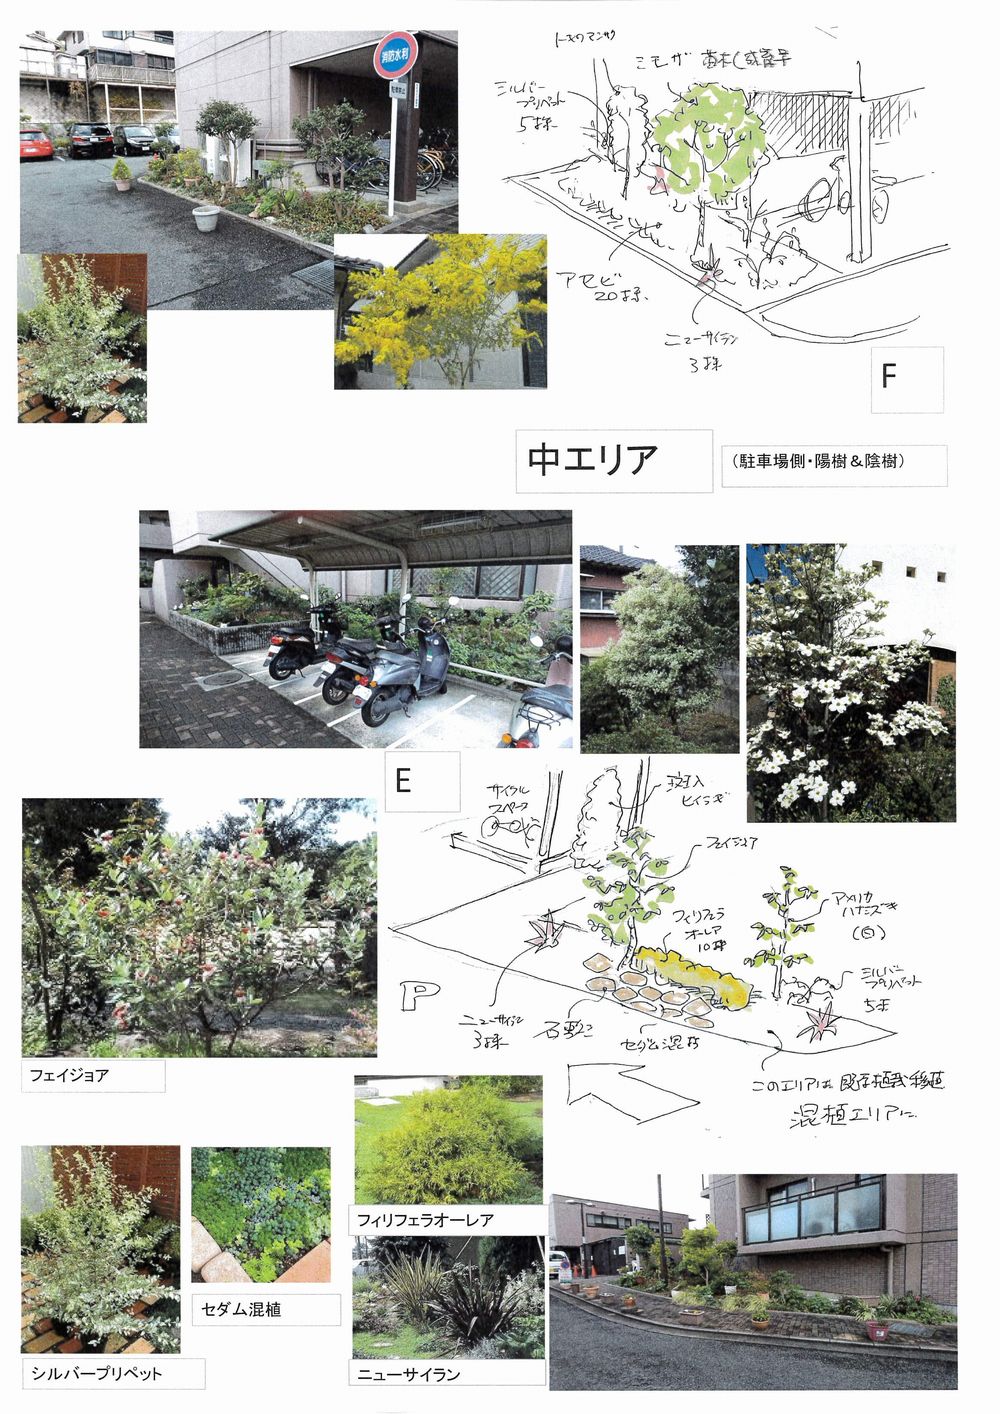 マンション植栽 捕植提案 植栽デザイン カラーリーフ イメージスケッチ 大阪 堺 アーテック にしかわ 一級建築士